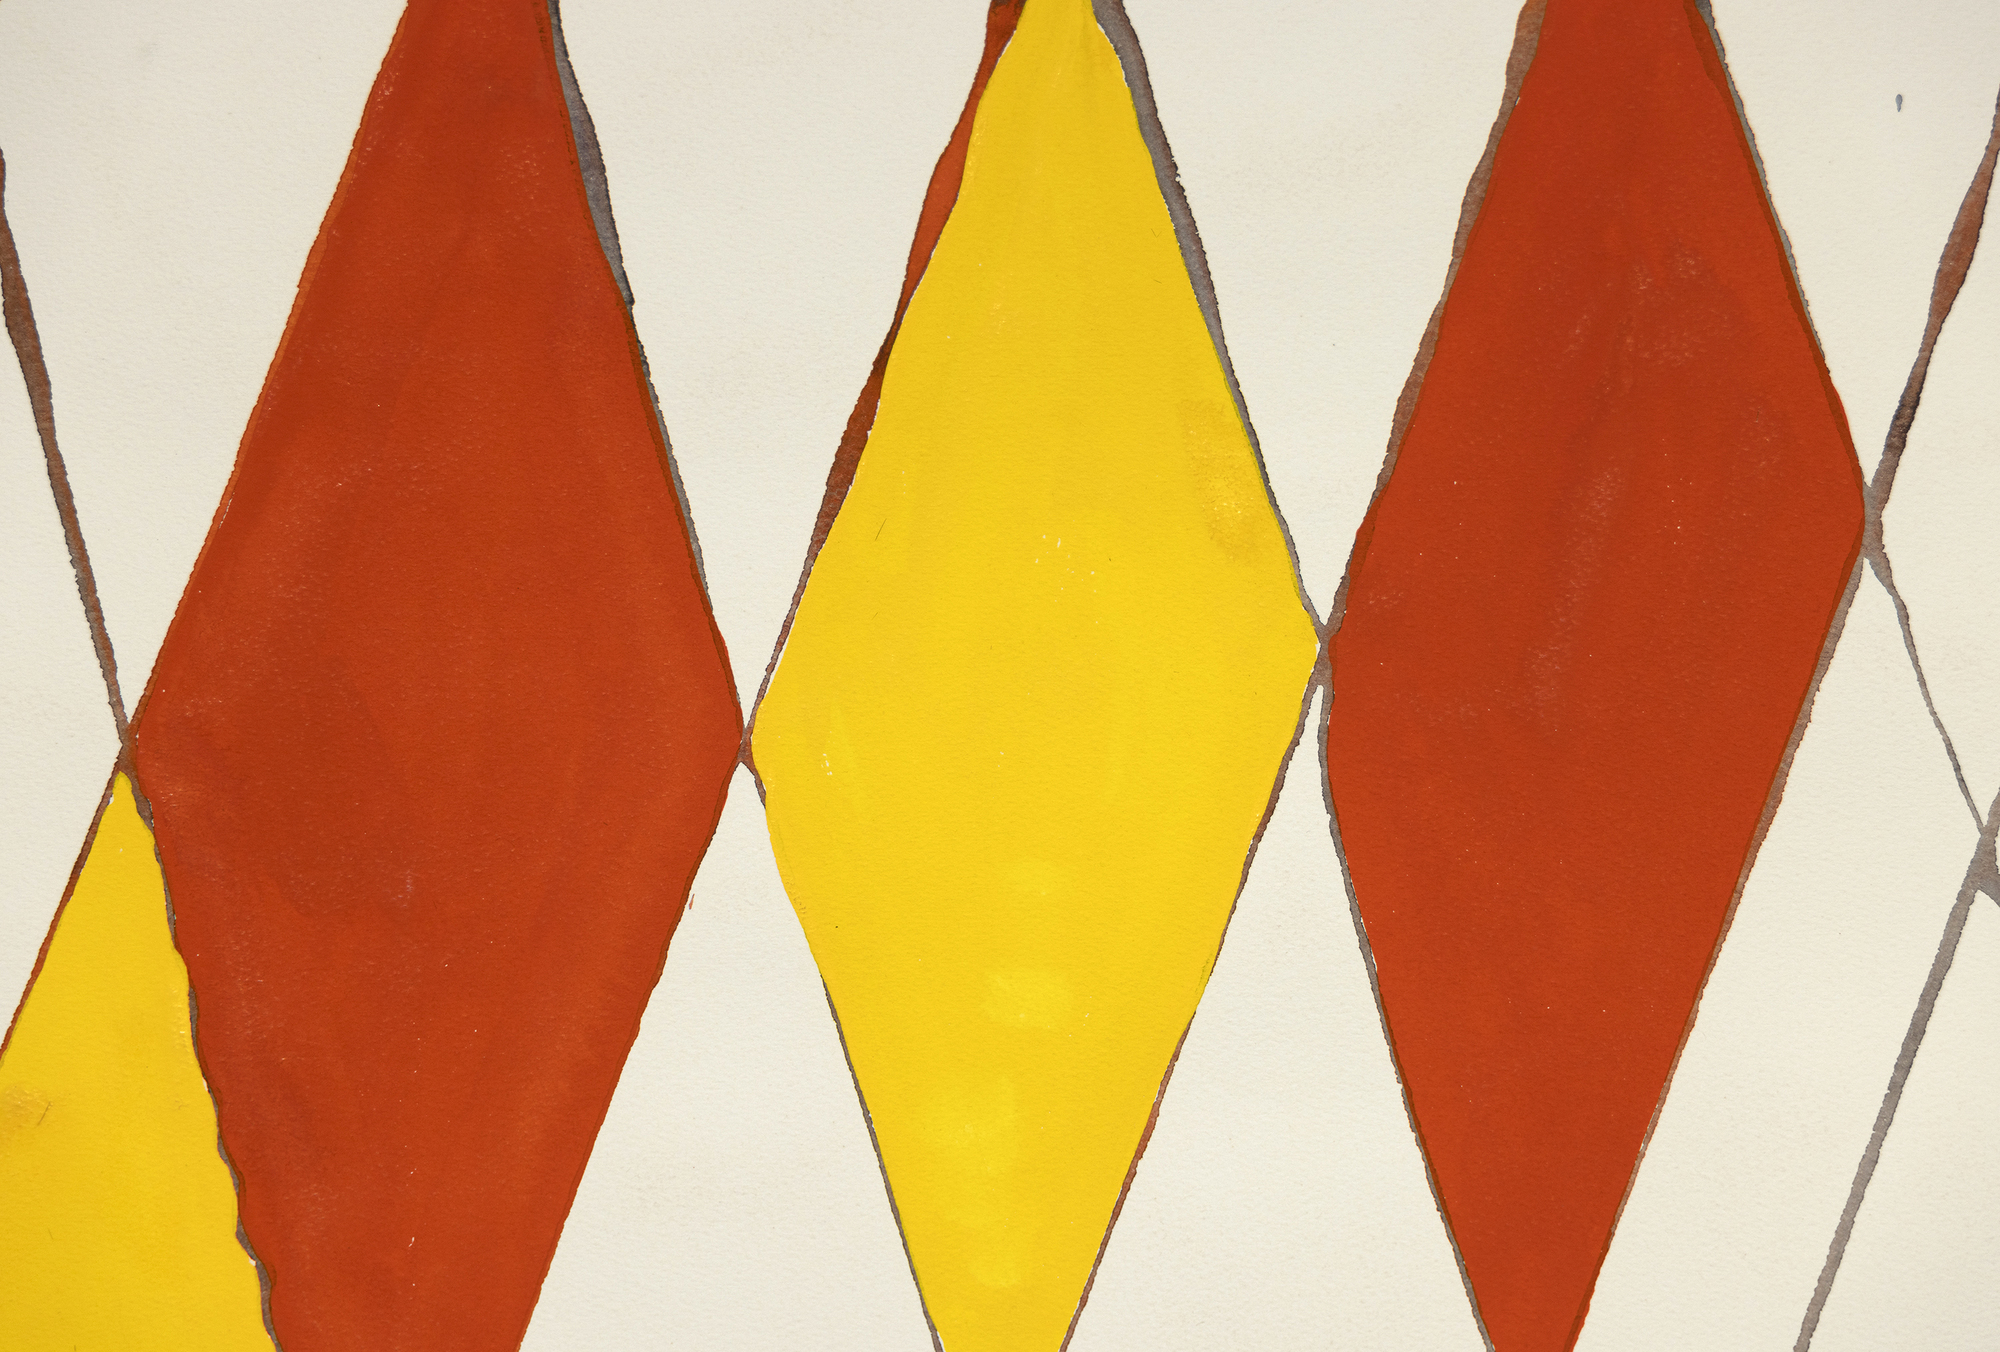 &quot;Wigwam rouge et jaune&quot; ، لوحة غواش آسرة لألكسندر كالدر ، هي استكشاف نابض بالحياة للتصميم واللون. تهيمن عليها شبكة من الخطوط القطرية التي تتقاطع بالقرب من ذروتها ، ينضح التكوين بتوازن ديناميكي. يقدم كالدر عنصرا من النزوة بأشكال الماس الأحمر والأصفر ، مما يضفي على القطعة المرح ويخلق جوا احتفاليا. تثير الكرات الحمراء في قمة الخطوط المائلة إلى اليمين انطباعا غريب الأطوار ، بينما توفر الكرات الرمادية الأصغر فوق الخطوط المائلة إلى اليسار تباينا وتوازنا. إن اندماج Calder البارع بين البساطة وعناصر التصميم الحيوية يجعل Wigwam rouge et jaune متعة بصرية.